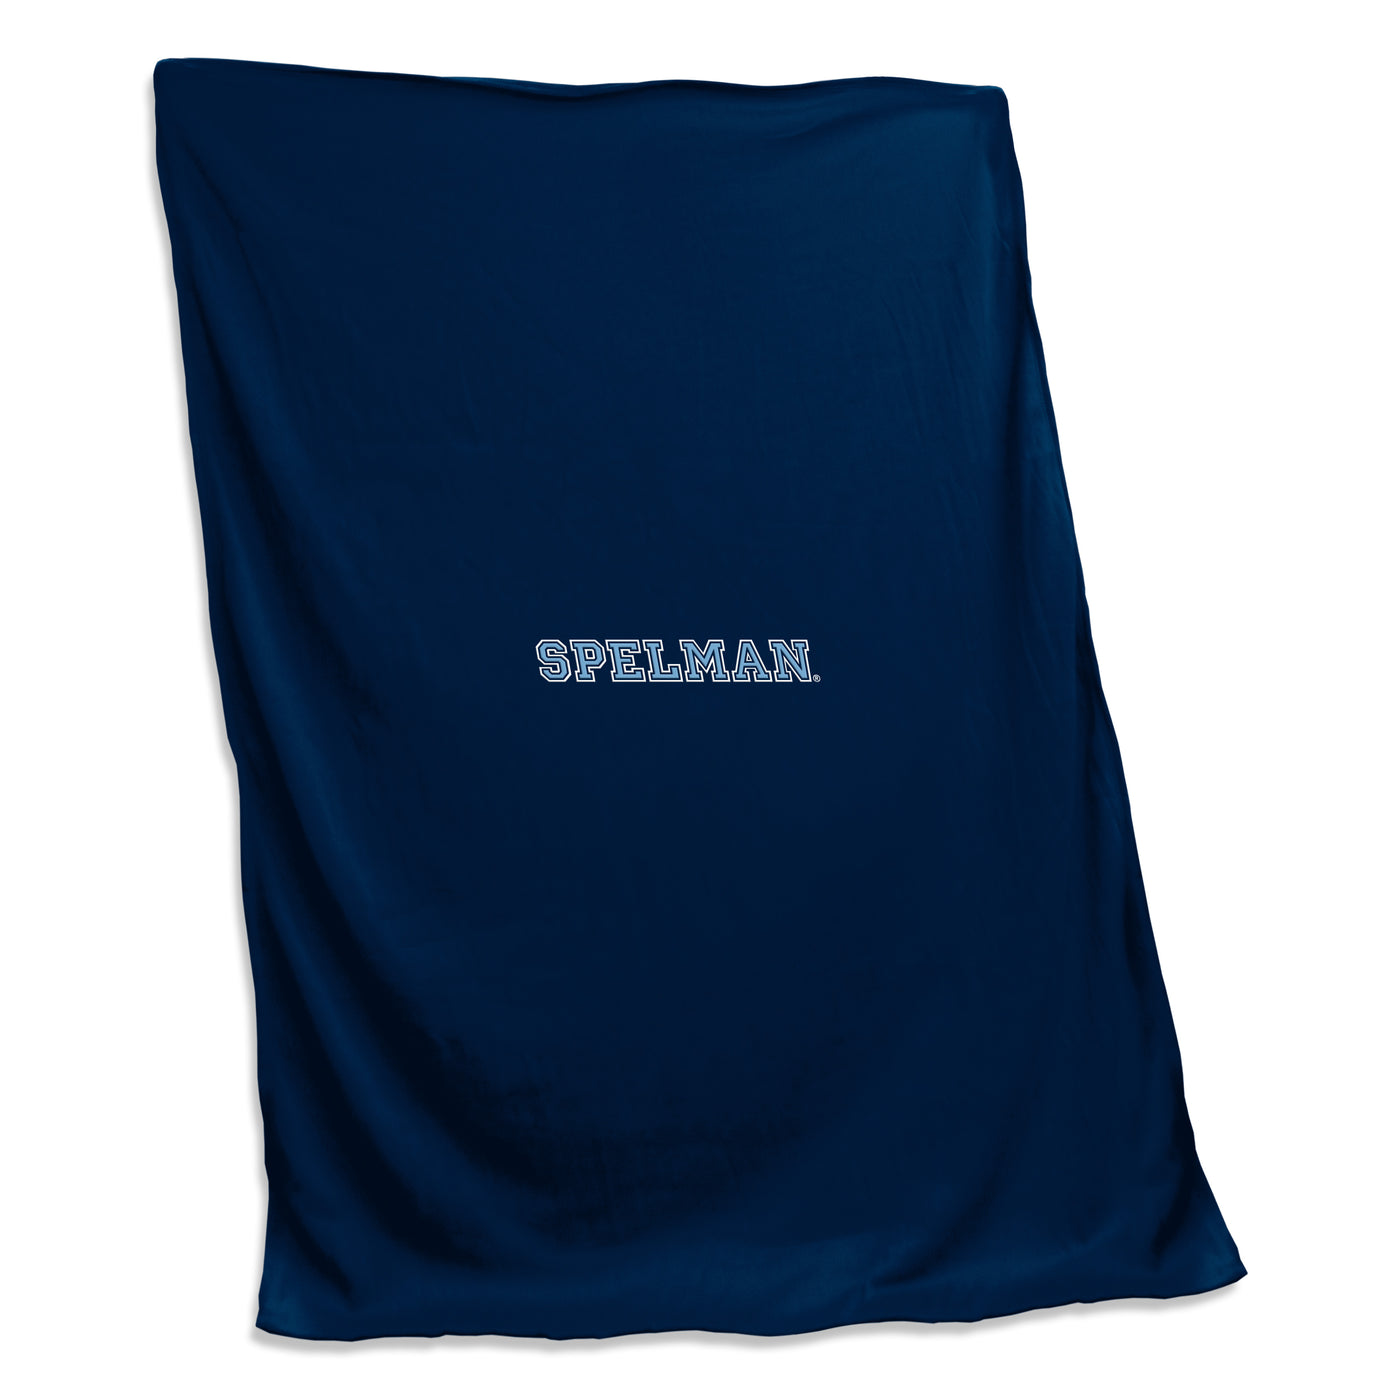 Spelman College Screened Sweatshirt Blanket